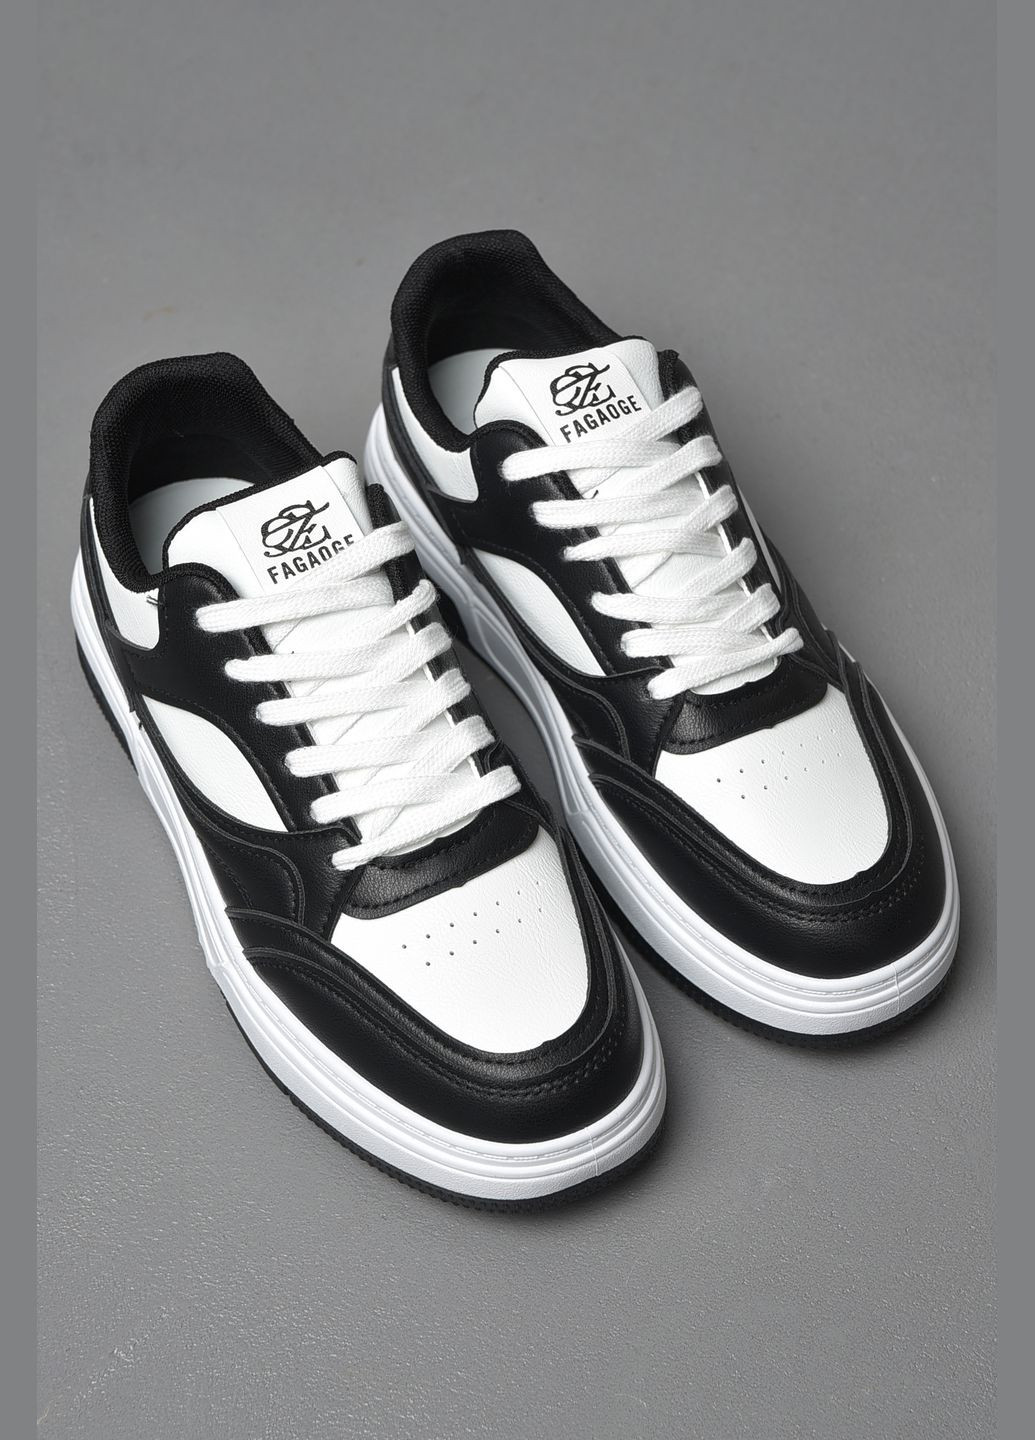 Чорно-білі Осінні кросівки чоловічі чорно-білого кольору на шнурівці Let's Shop